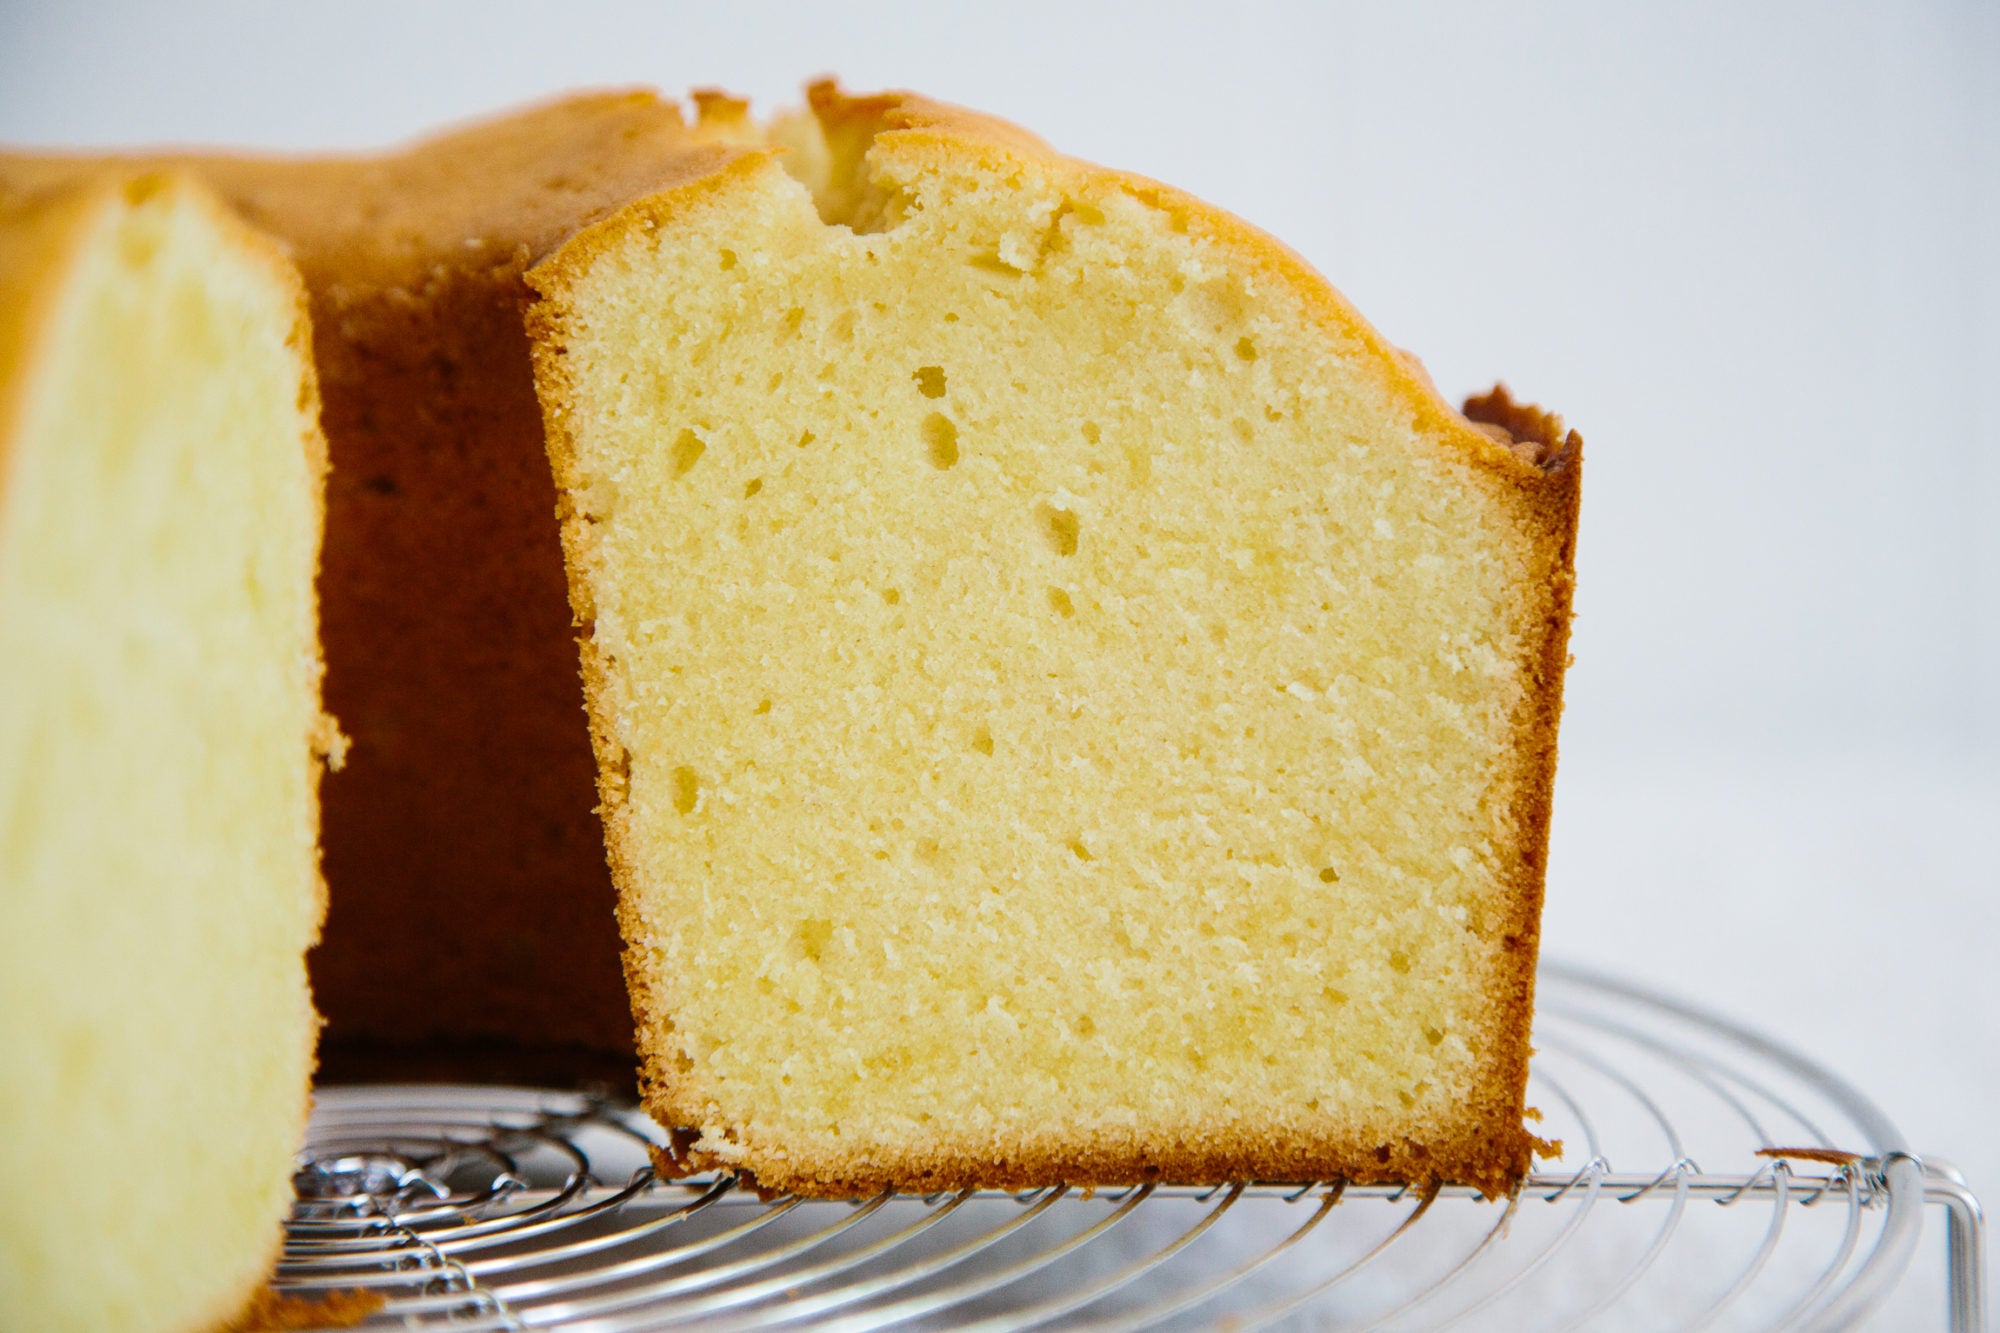 taste-pound-cake-yossy-arefi-6127